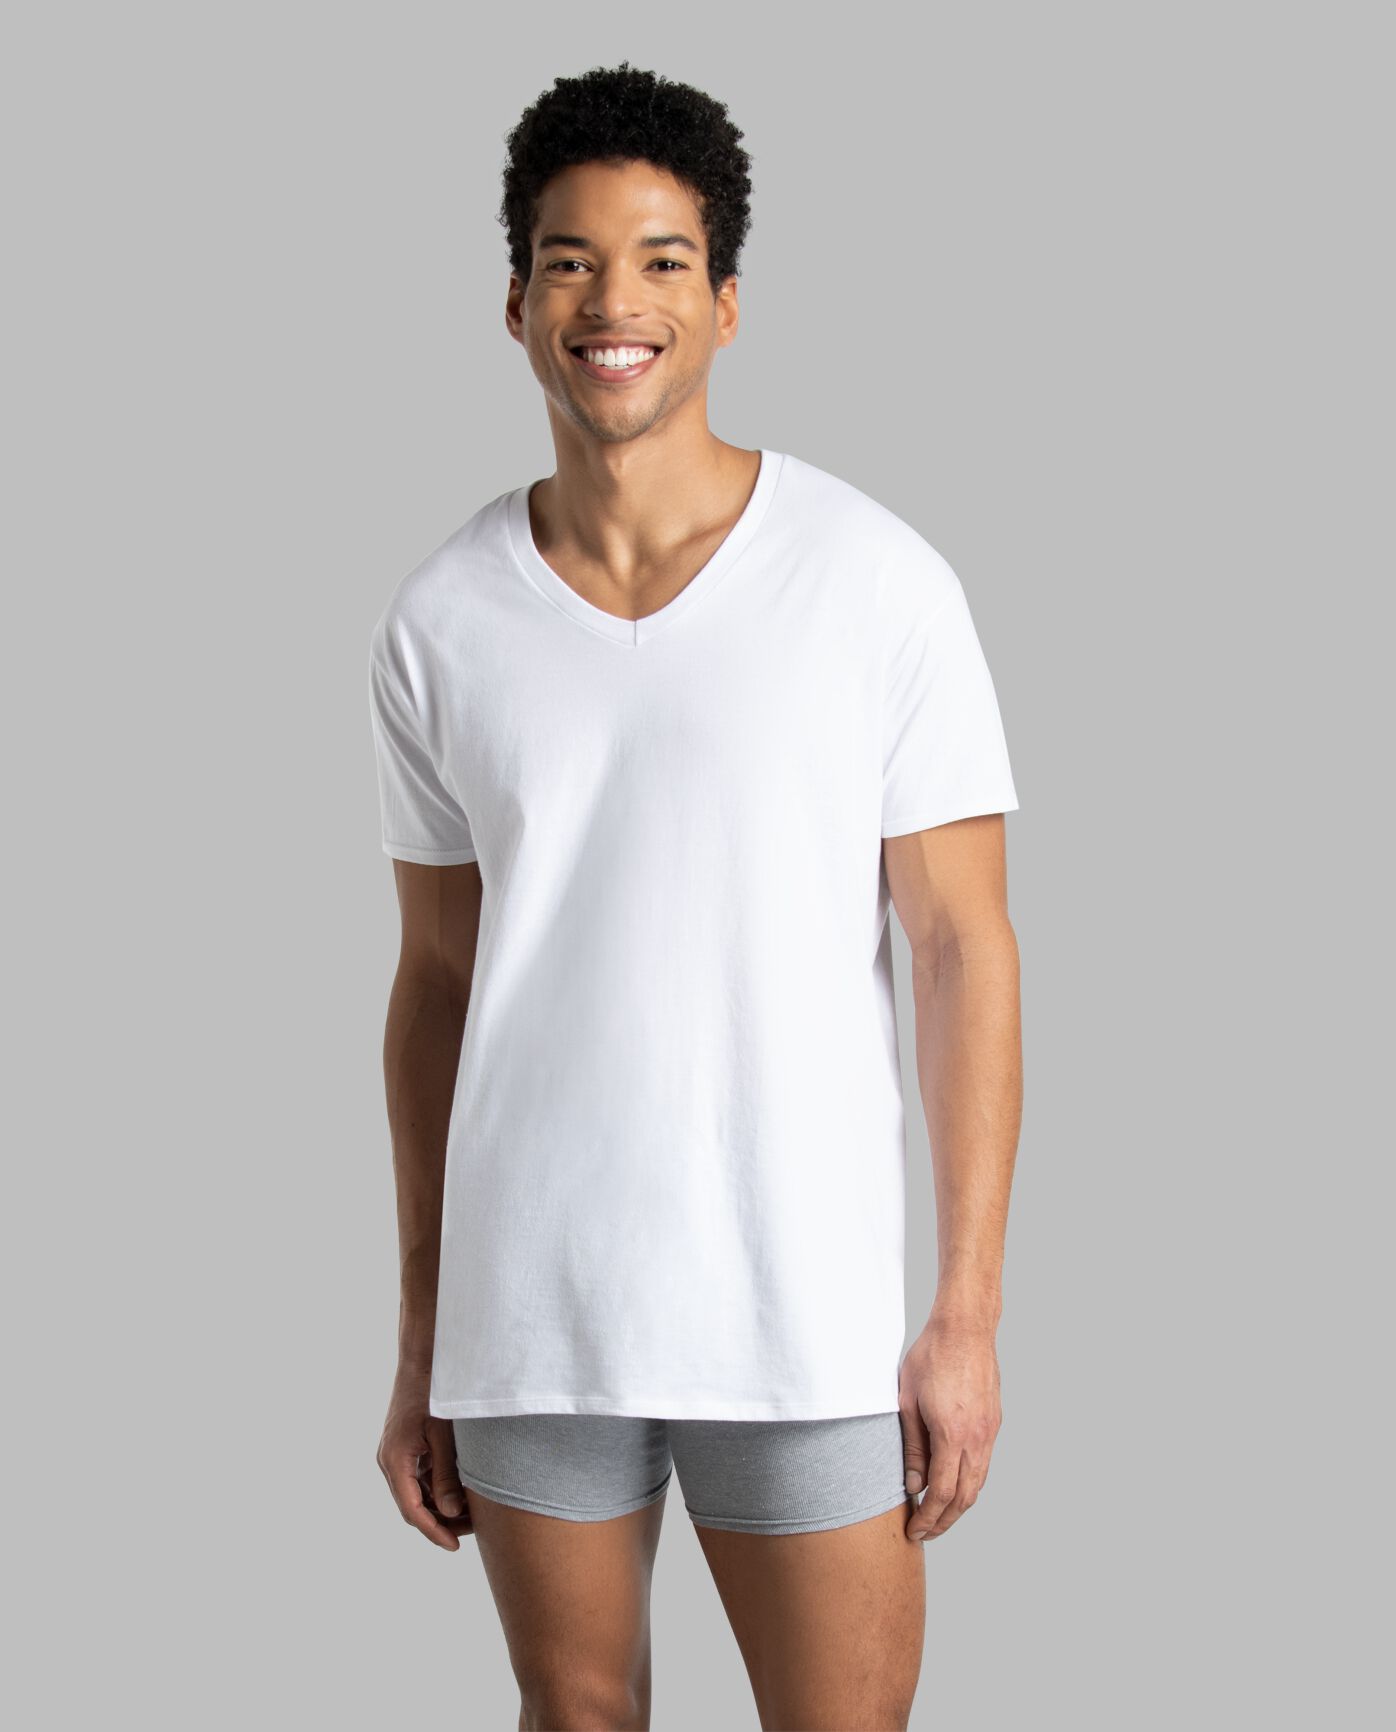 Men's Short Sleeve White V-Neck T-Shirts | Fruit of the Loom